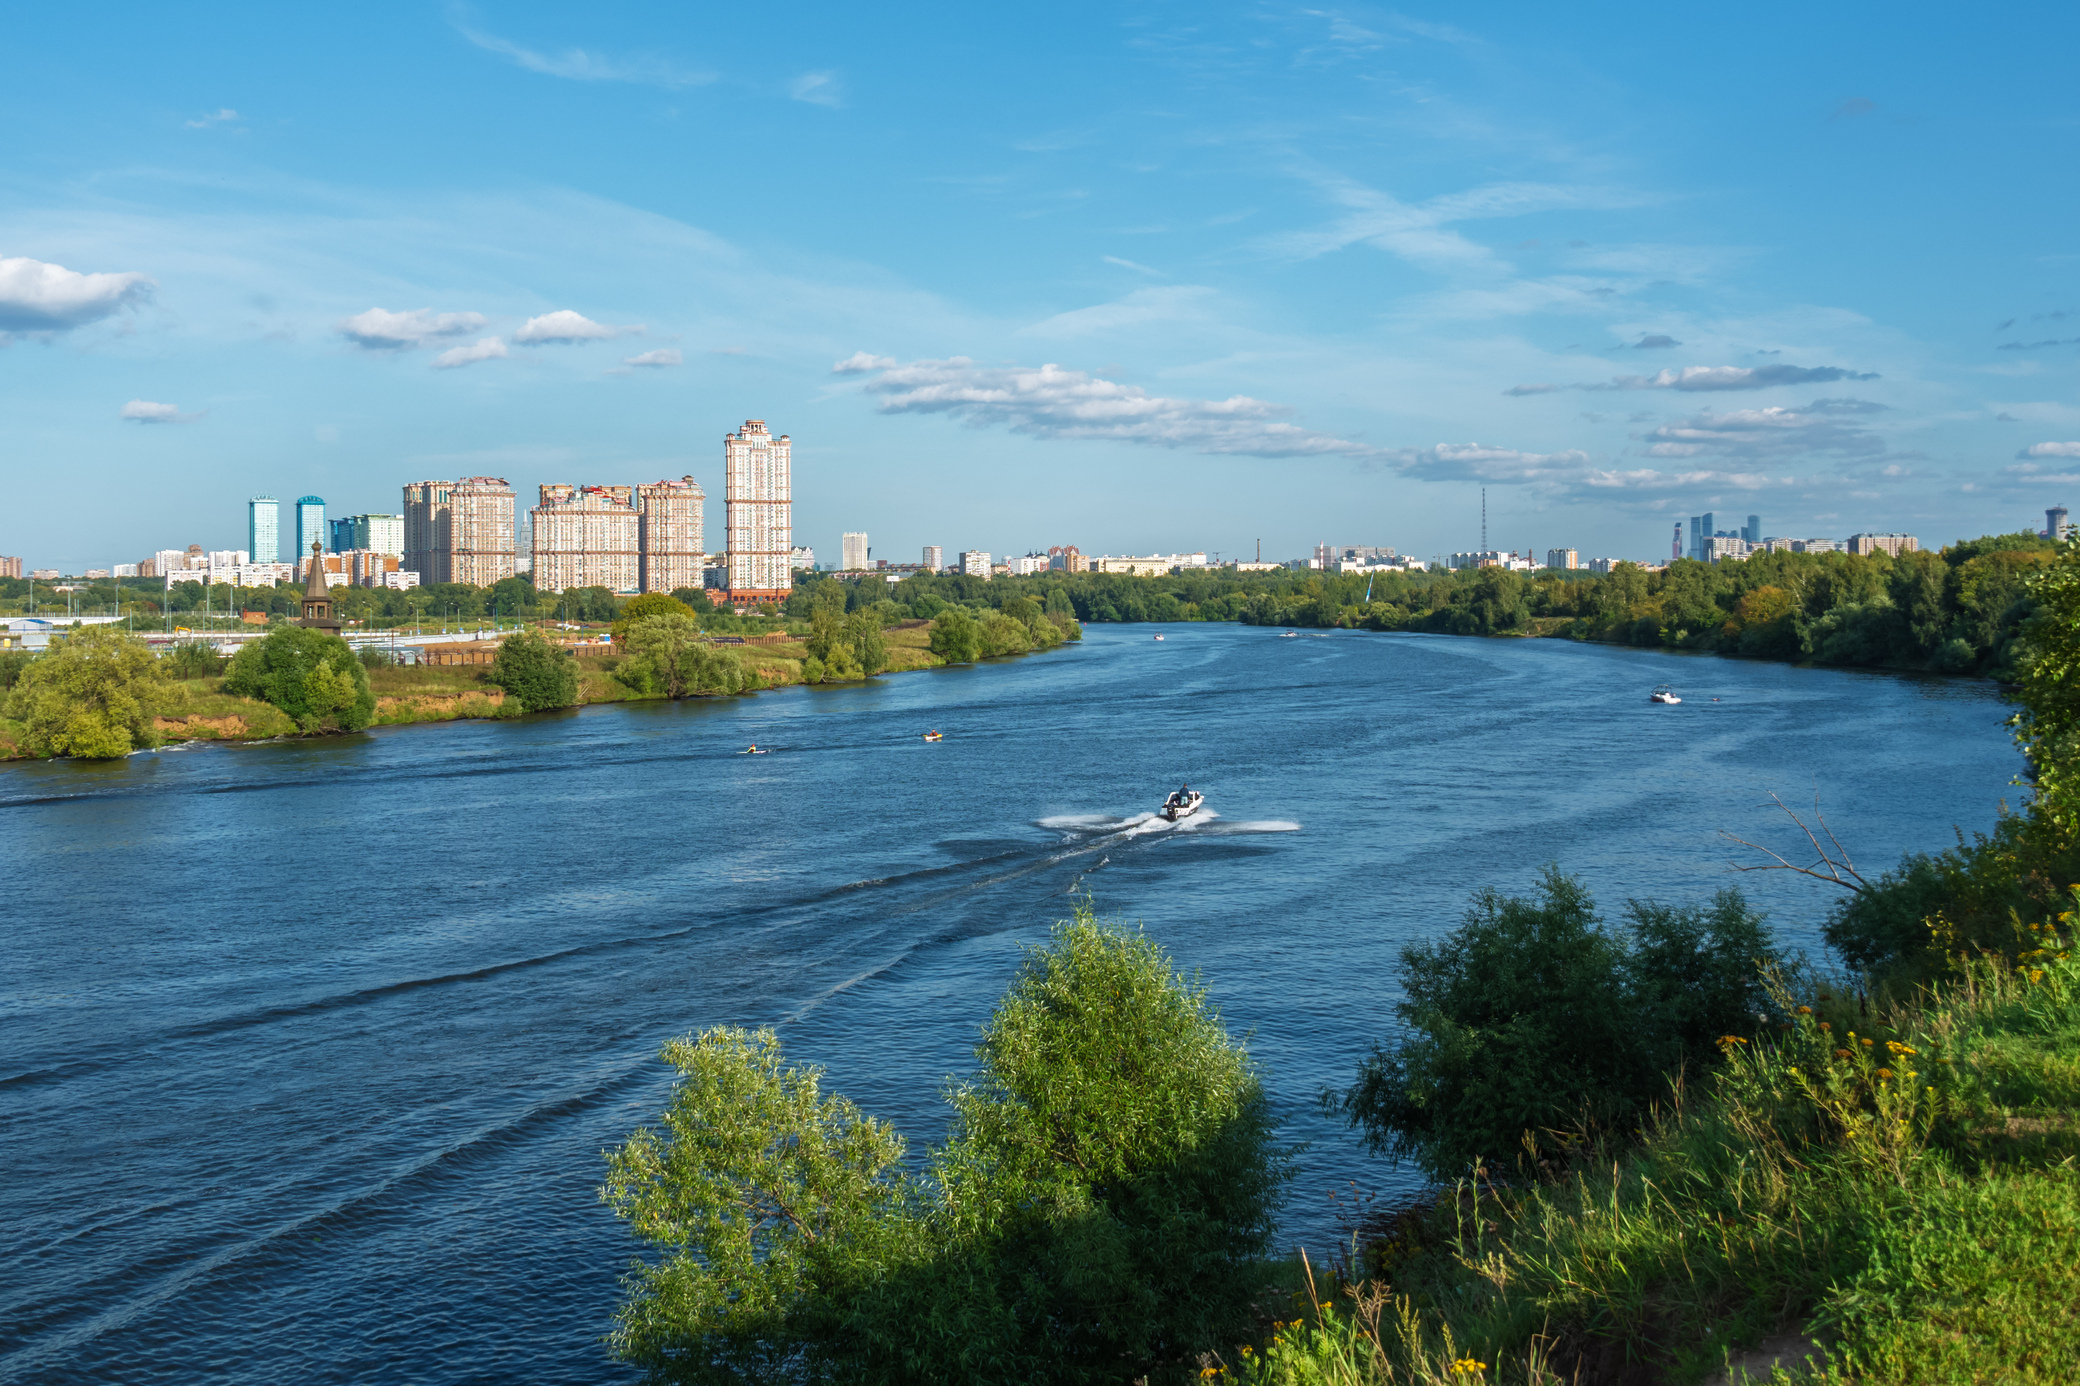 Река Москва в районе Строгино